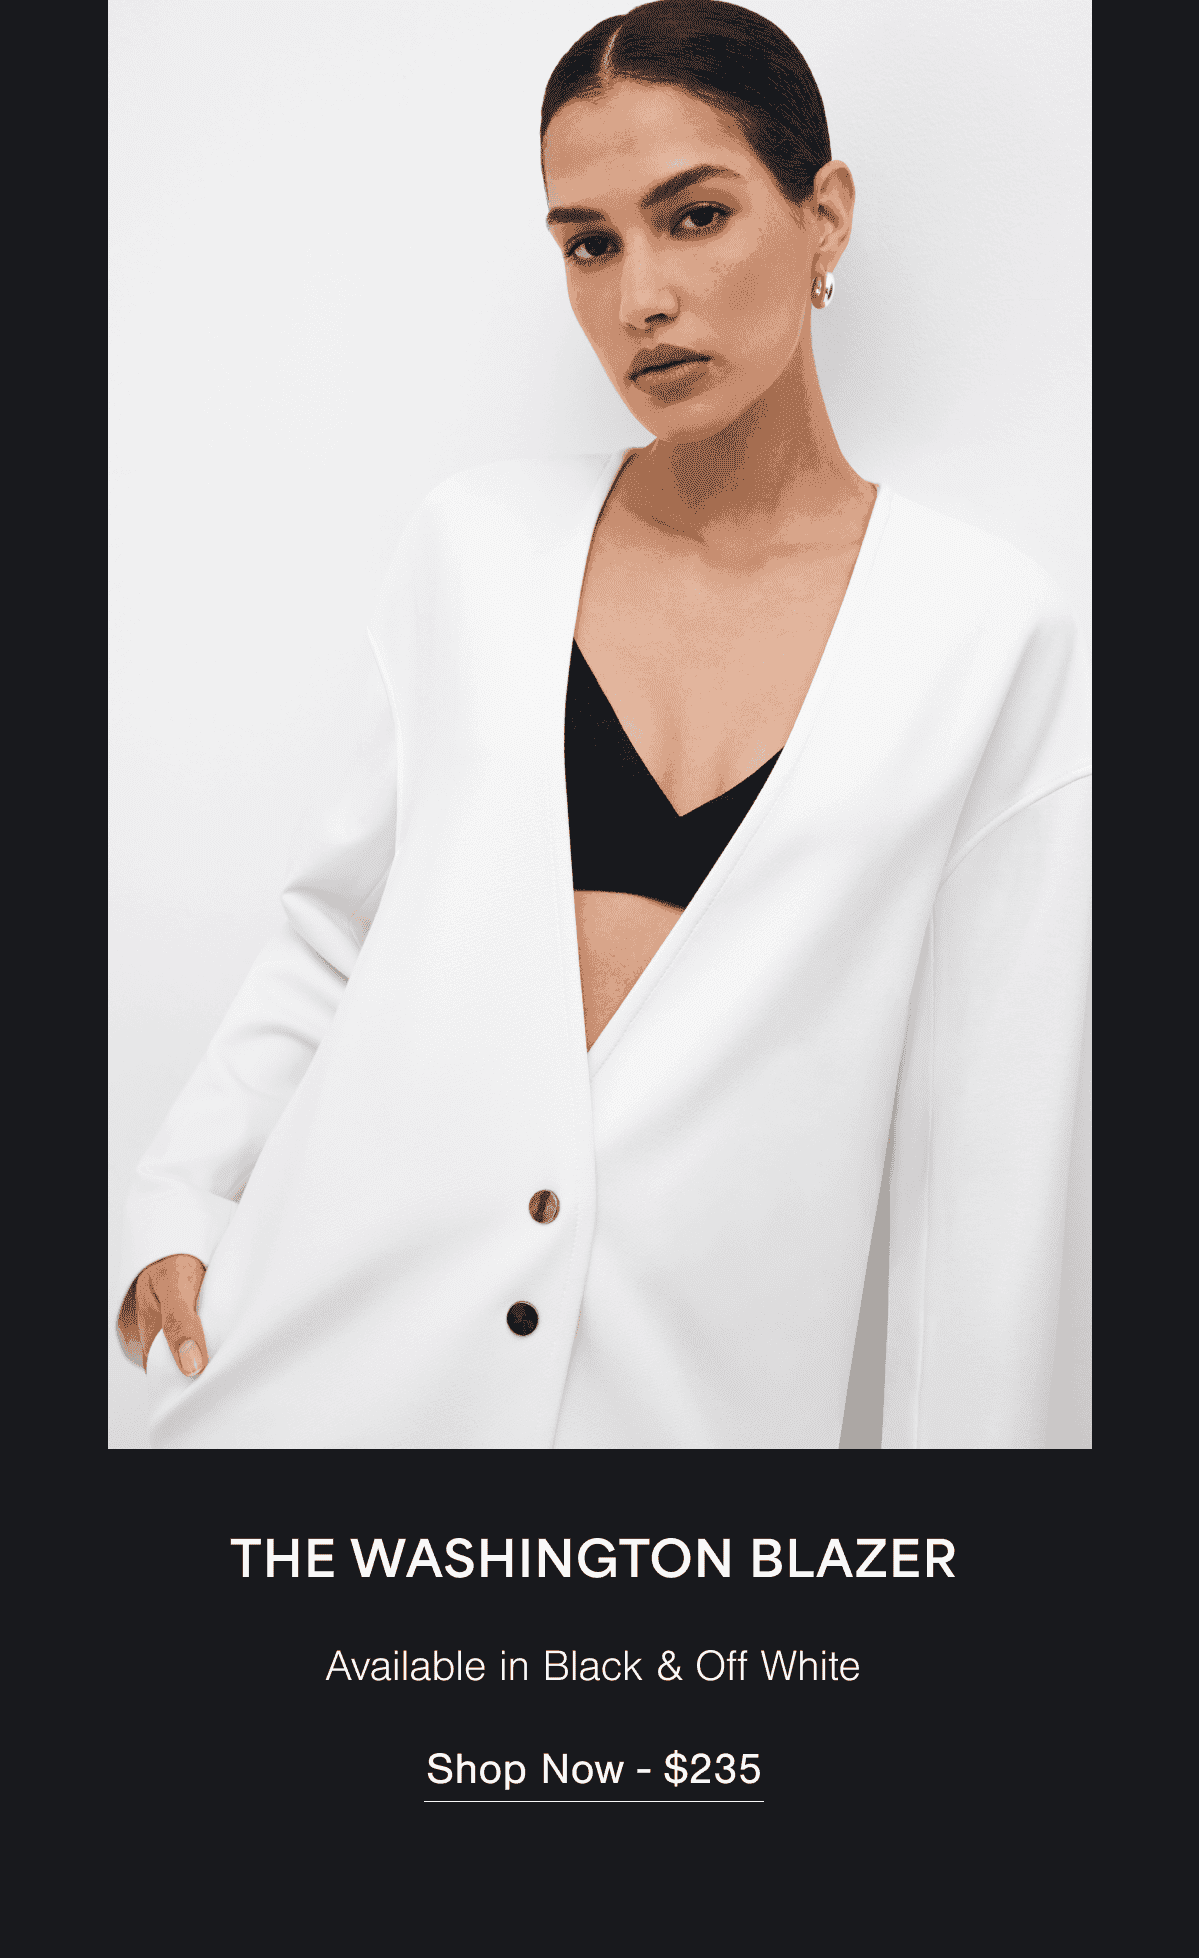 The Washington Blazer